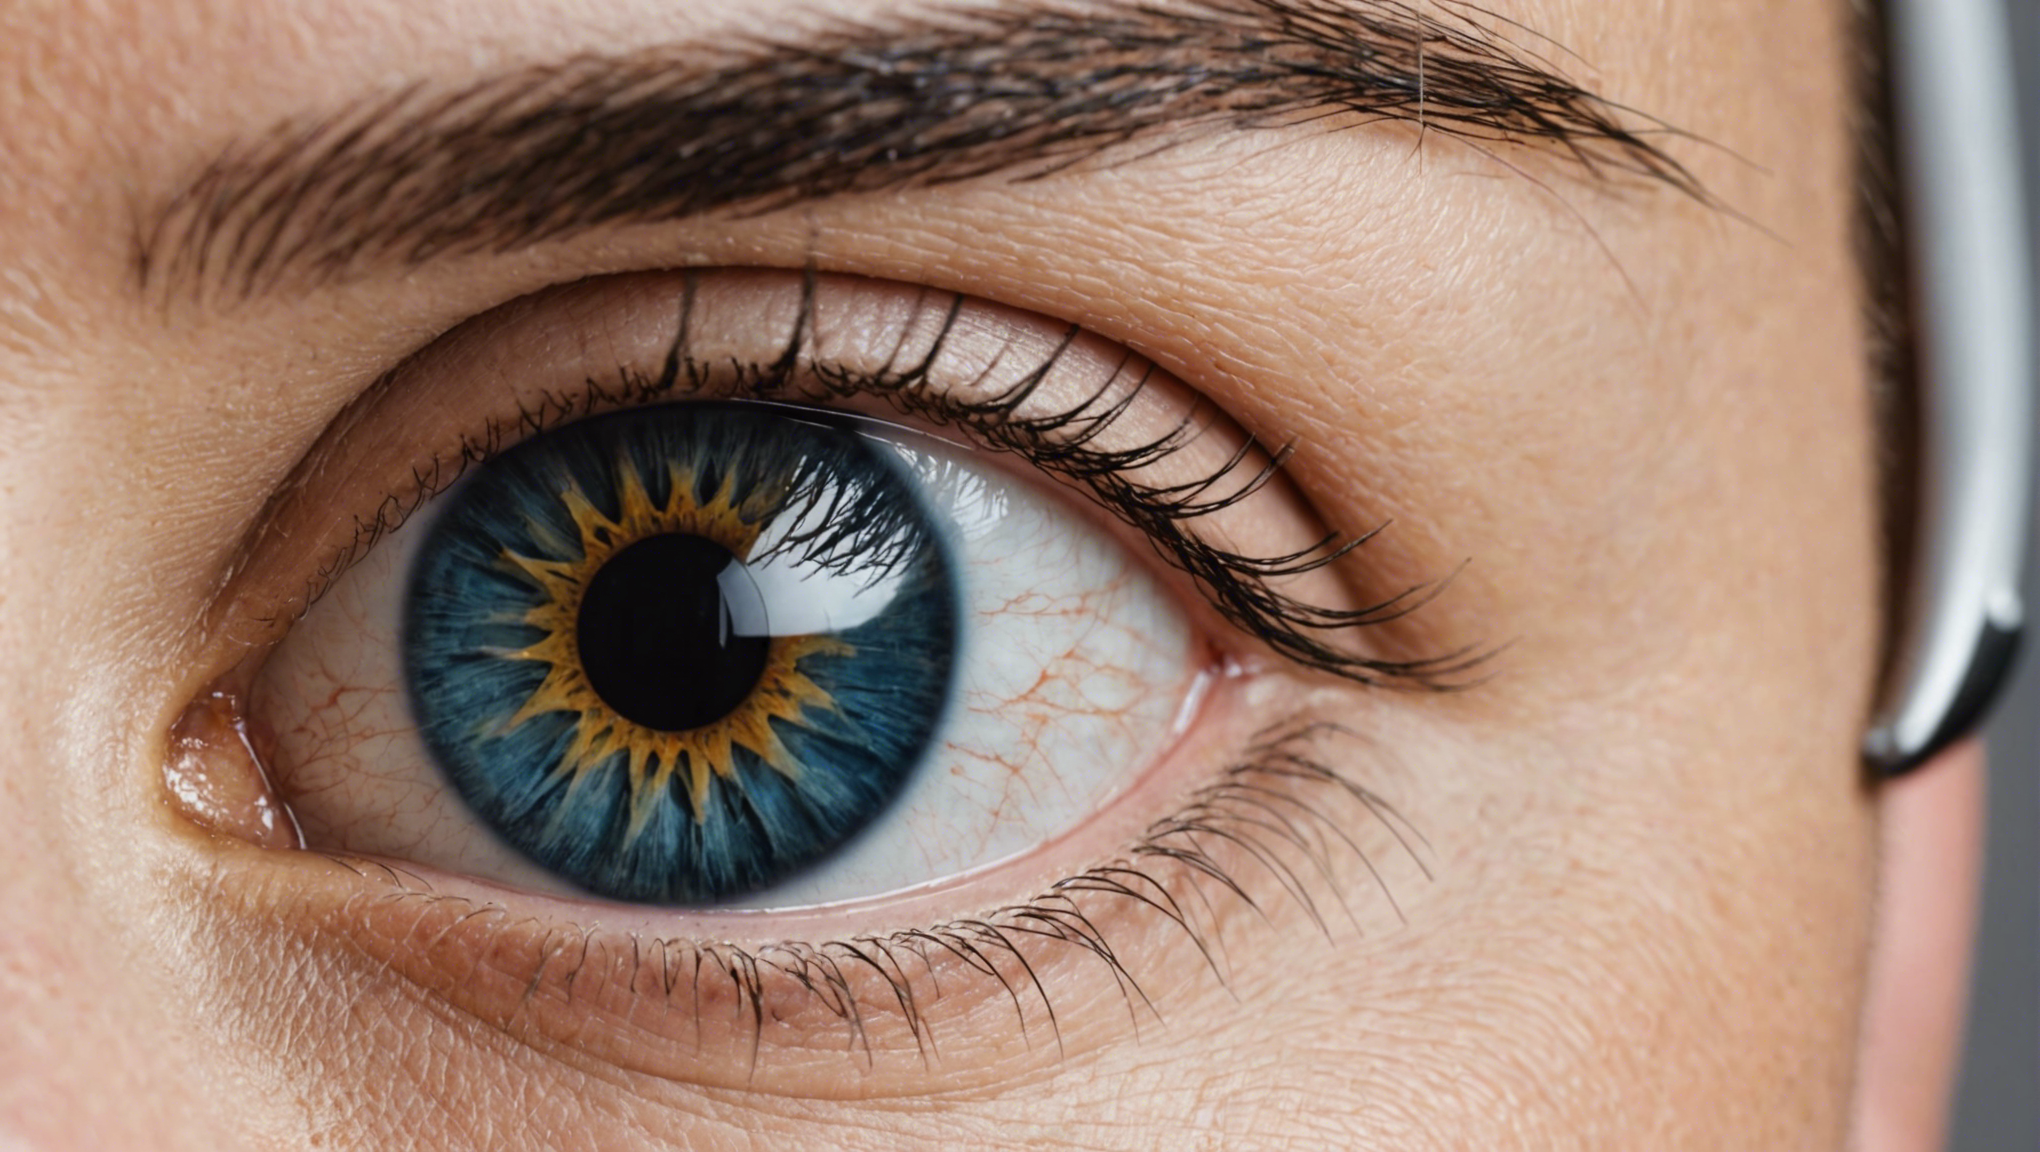 découvrez tout ce qu'il faut savoir sur l'opération des yeux à toulouse et apprenez comment retrouver une vision parfaite avec nos spécialistes.